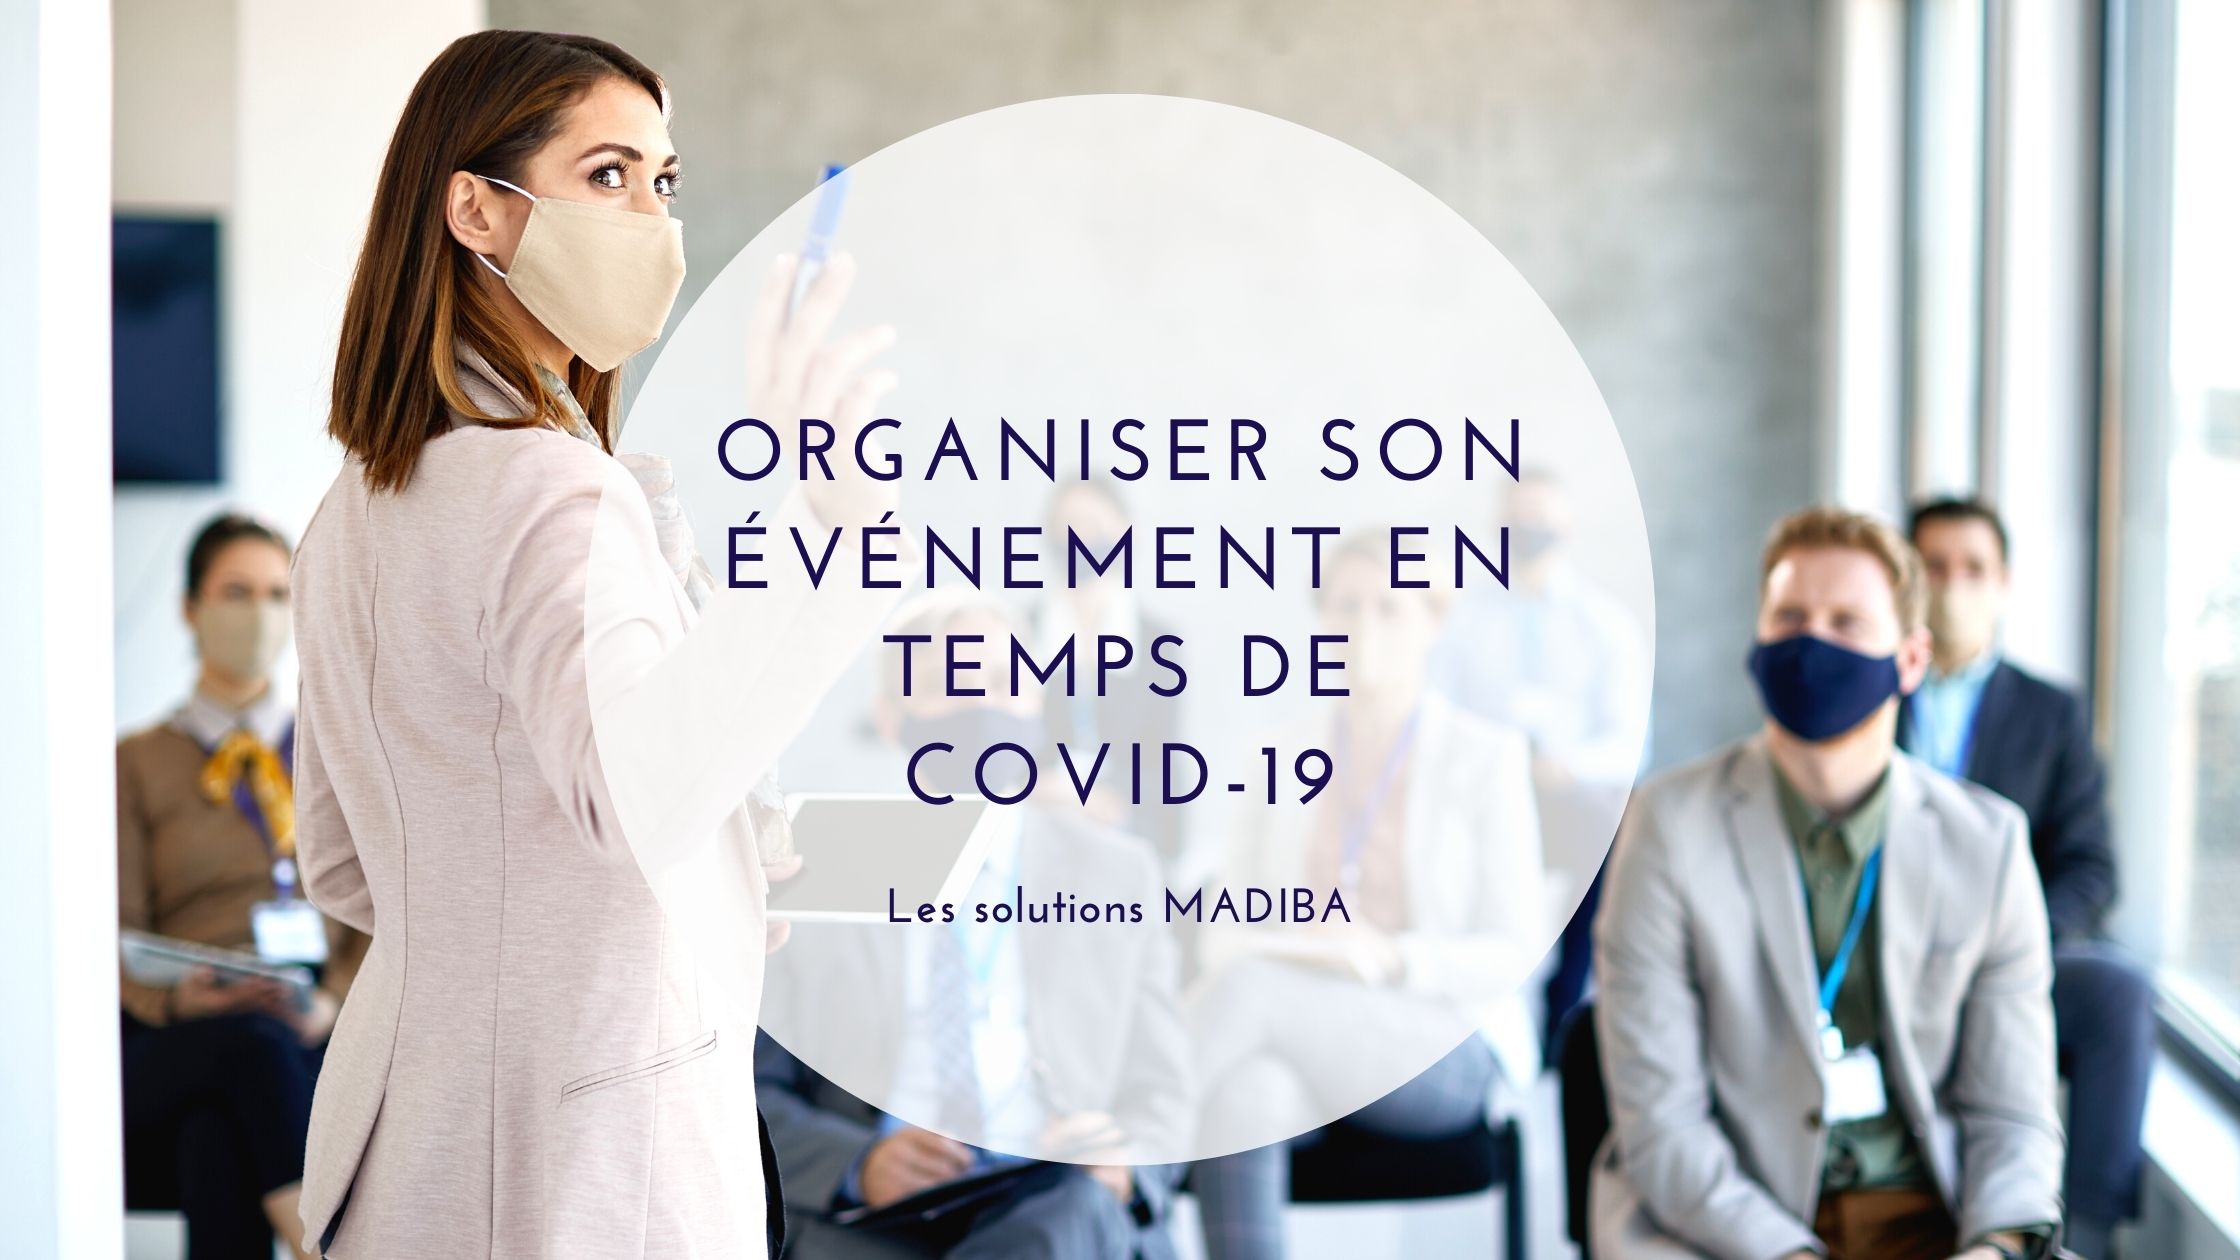 ORGANISER SON SEMINAIRE OU EVENEMENT D'ENTREPRISE EN TEMPS DE COVID-19